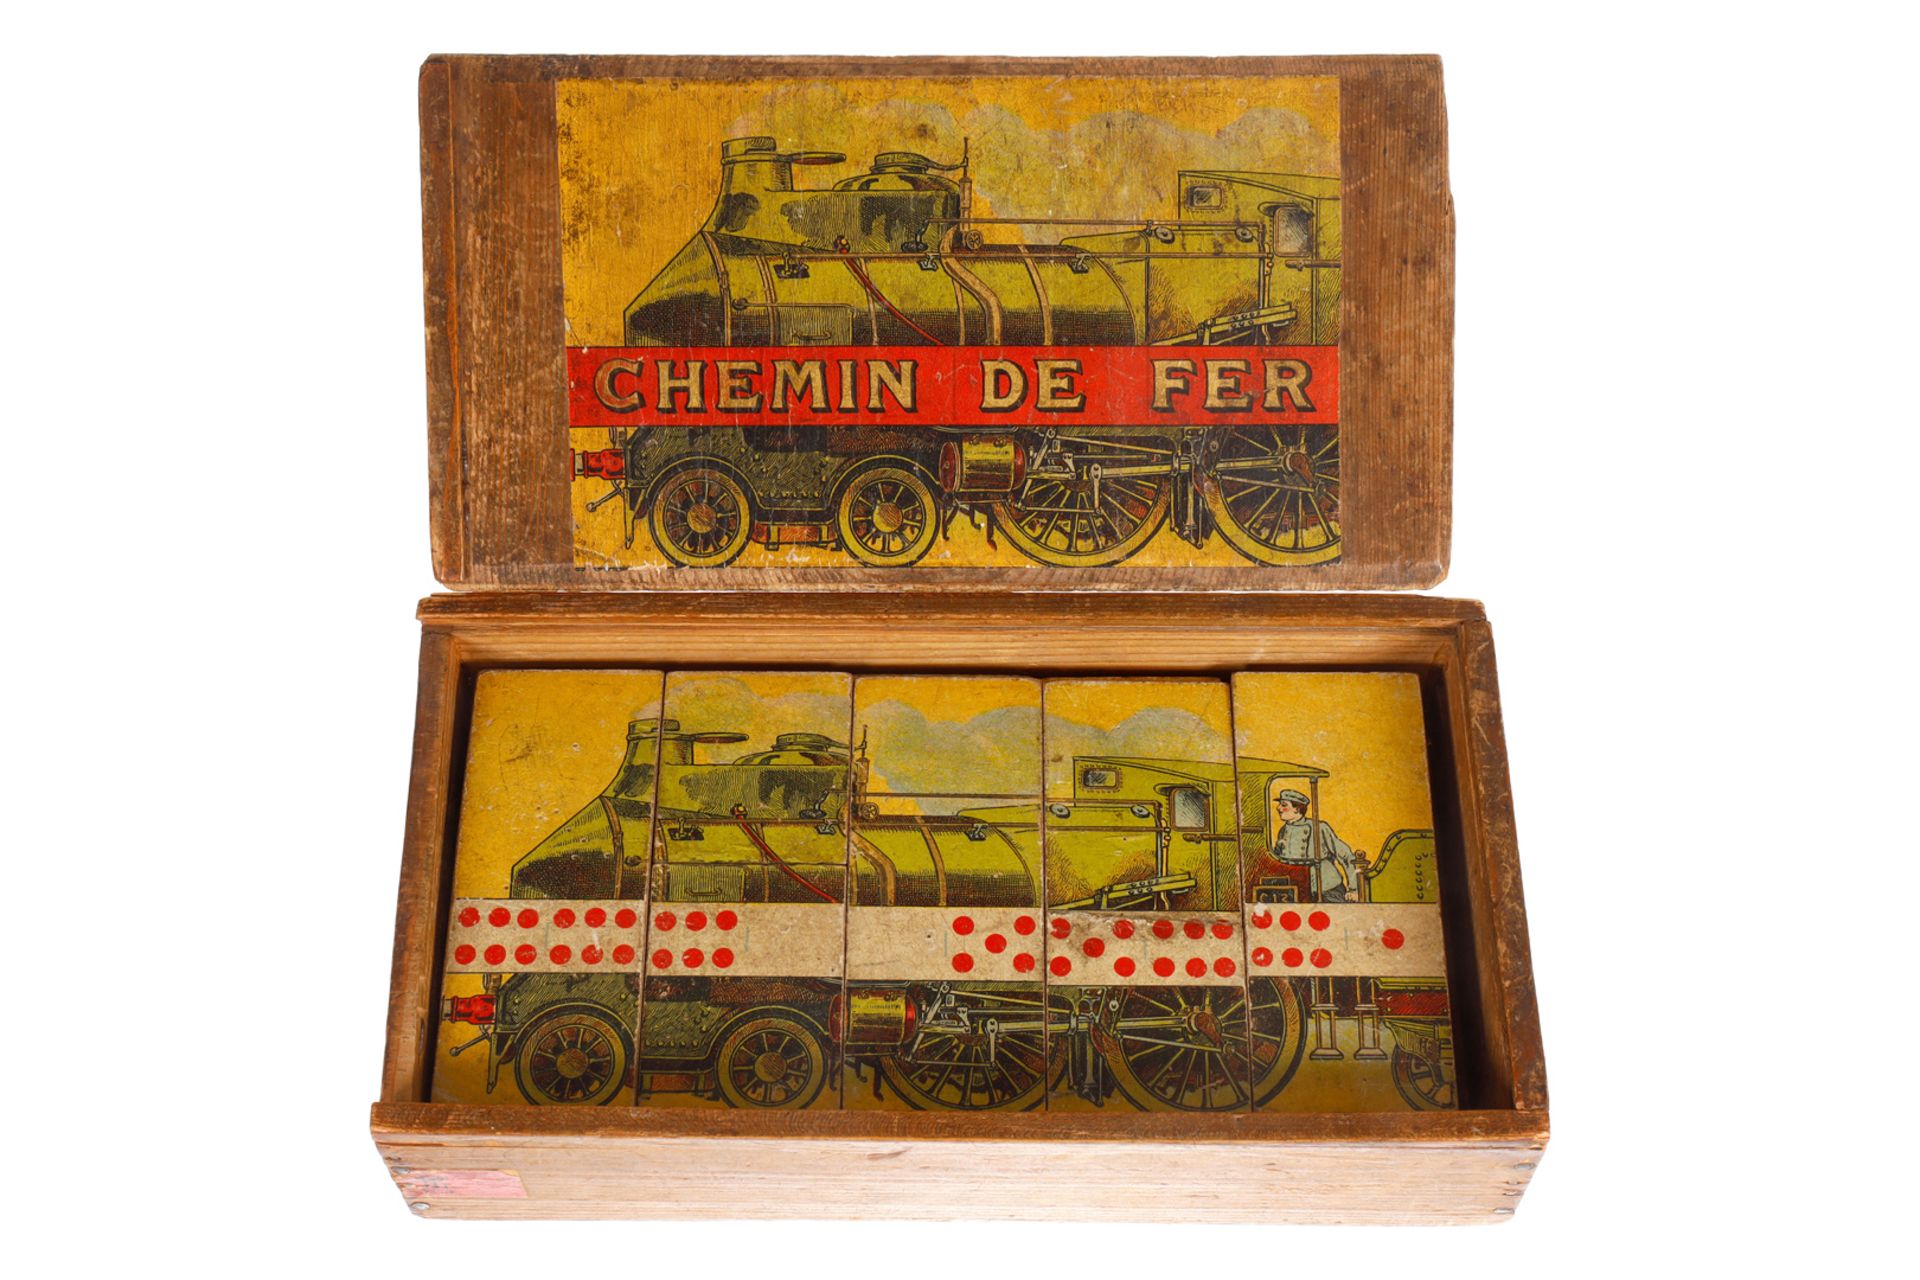 TR Domino-Spiel, Paris ”Chemin De Fer”, mit Abbildung eines Coupé-Vent-Zuges, uralt, in altem